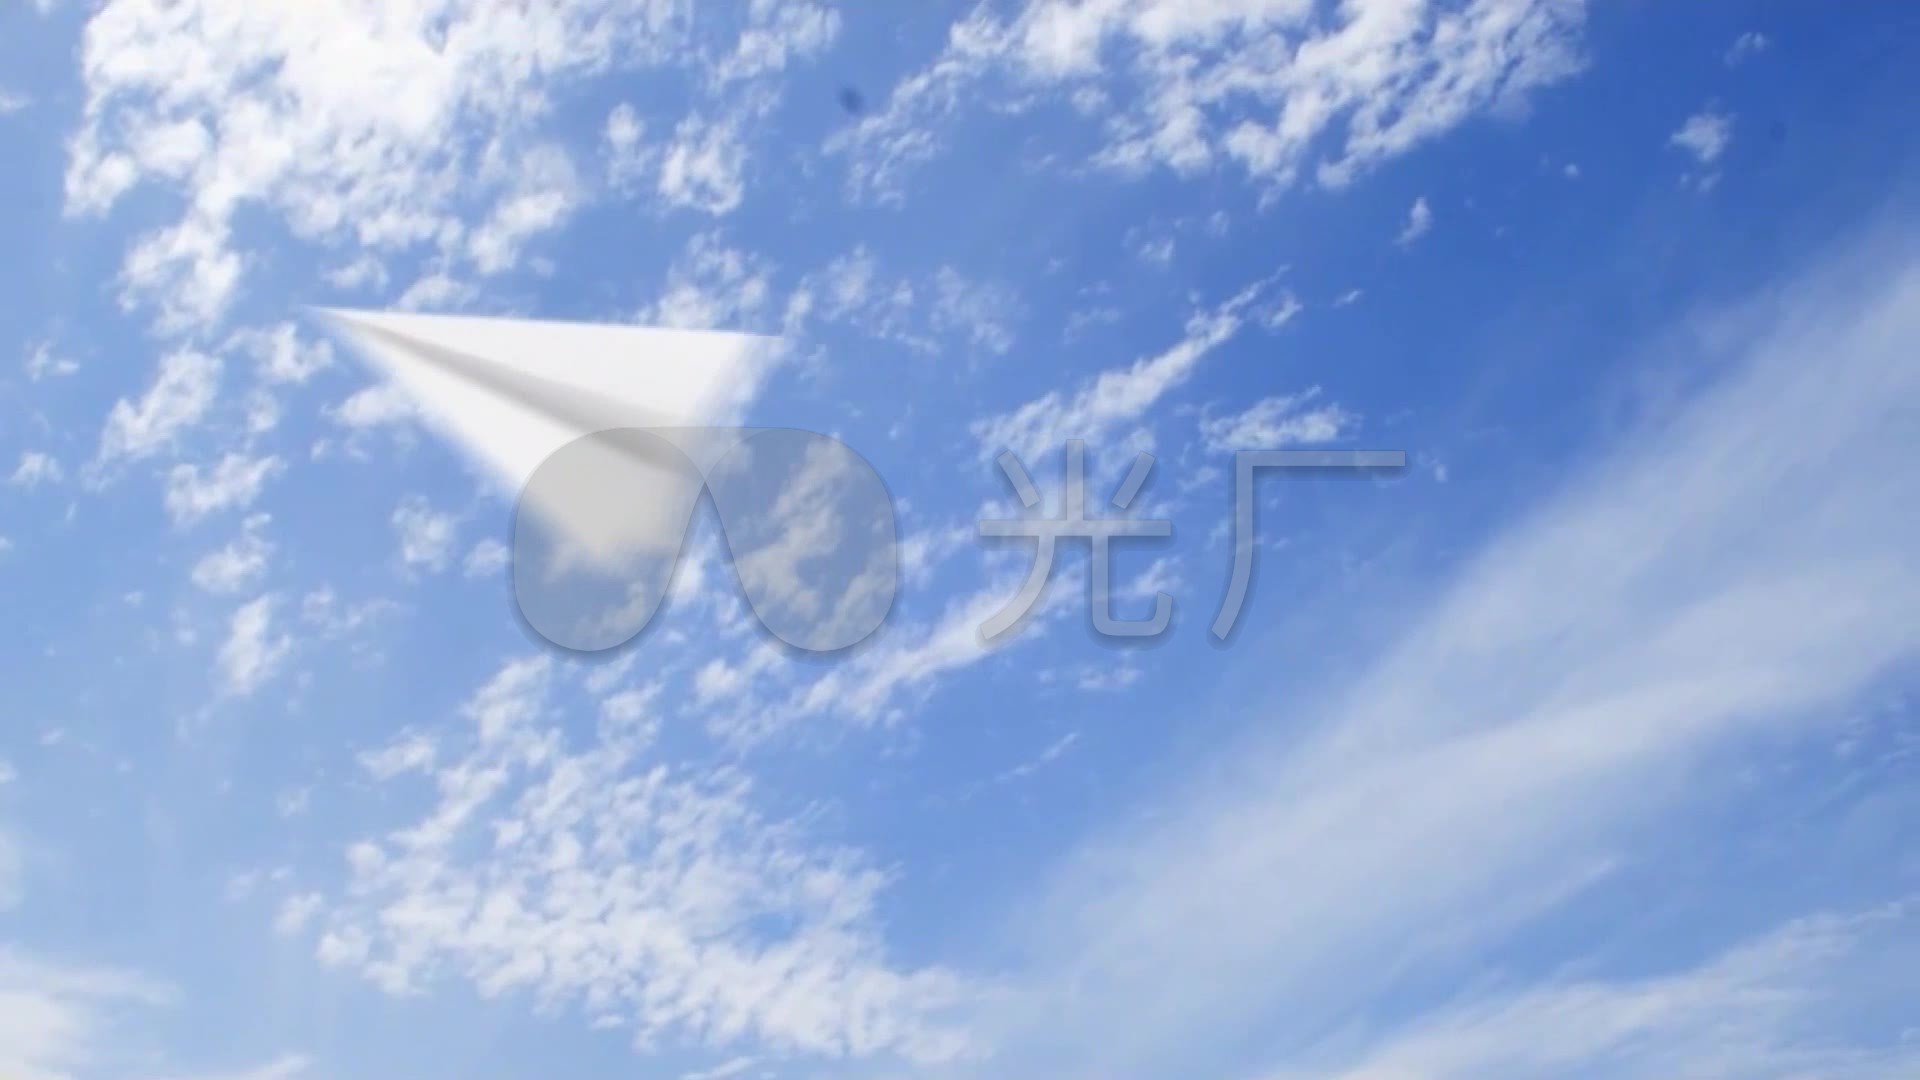 播放纸飞机的视频怎么做_播放小小的纸飞机儿歌视频